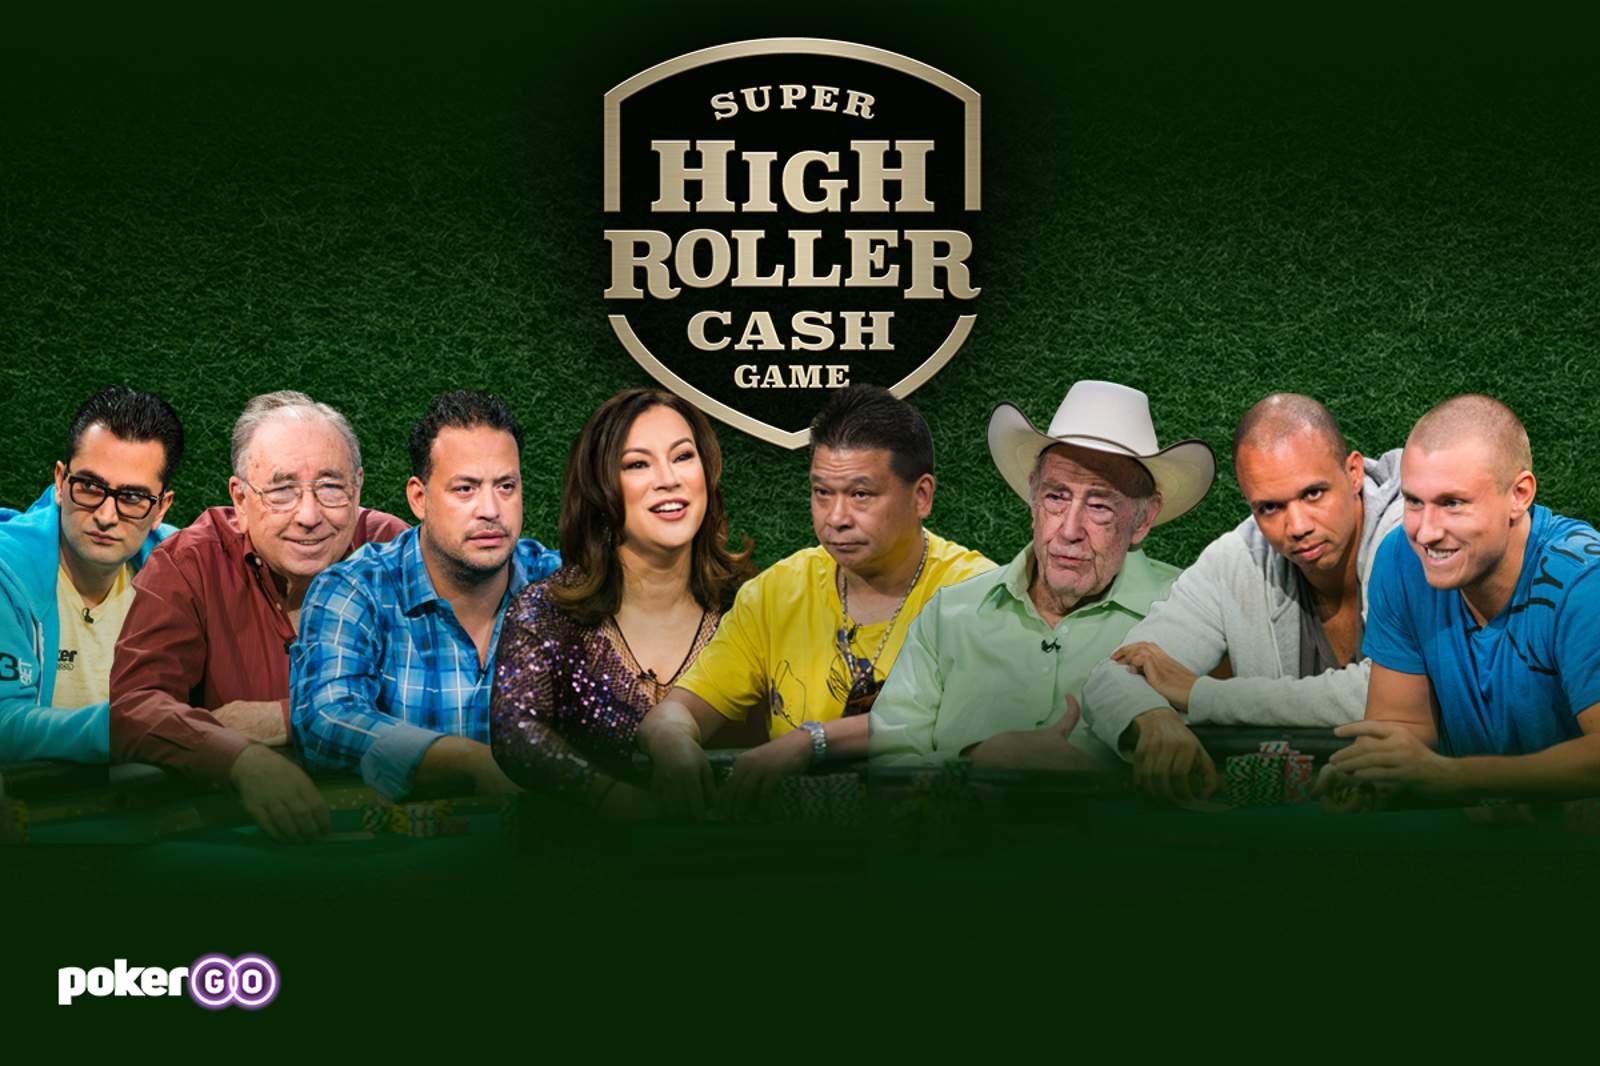 Matt Kirk Stars in the 2015 Super High Roller Bowl Cash Game on PokerGO